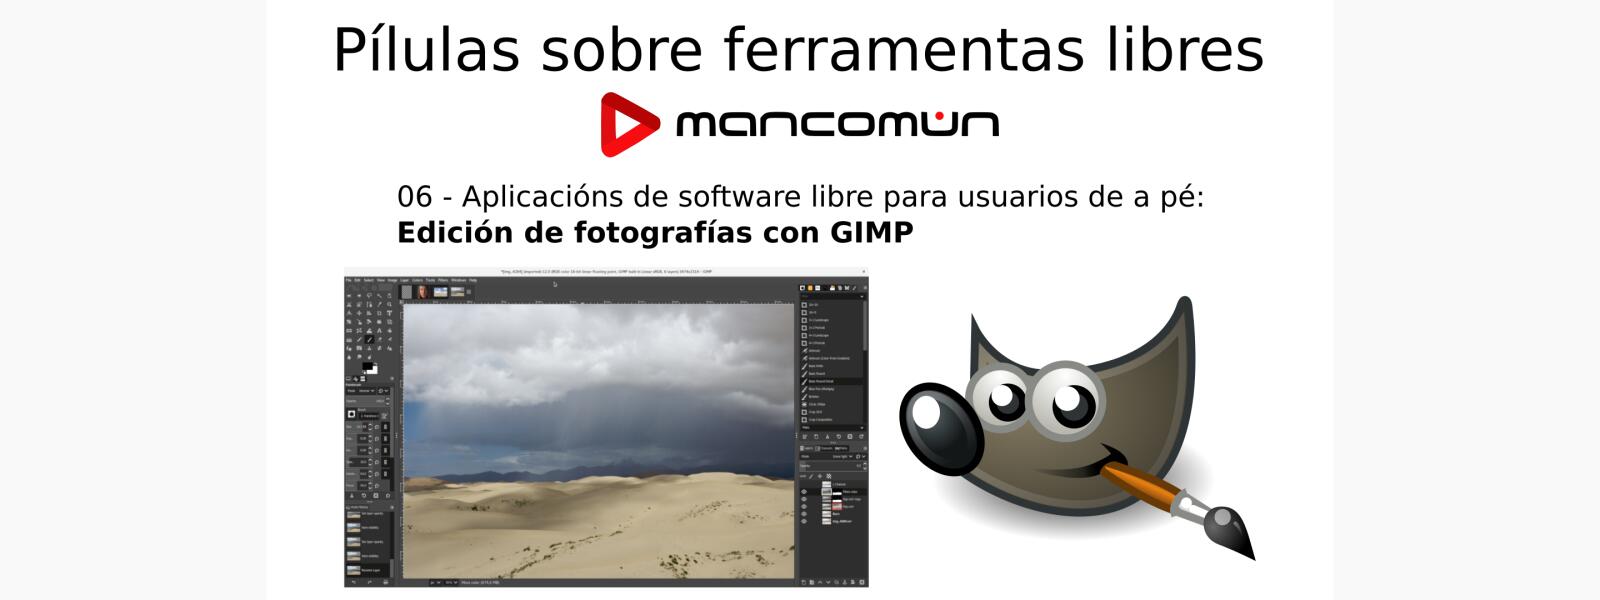 Aplicaciones de software libre para usuarios de a pie: edición de fotografías con GIMP